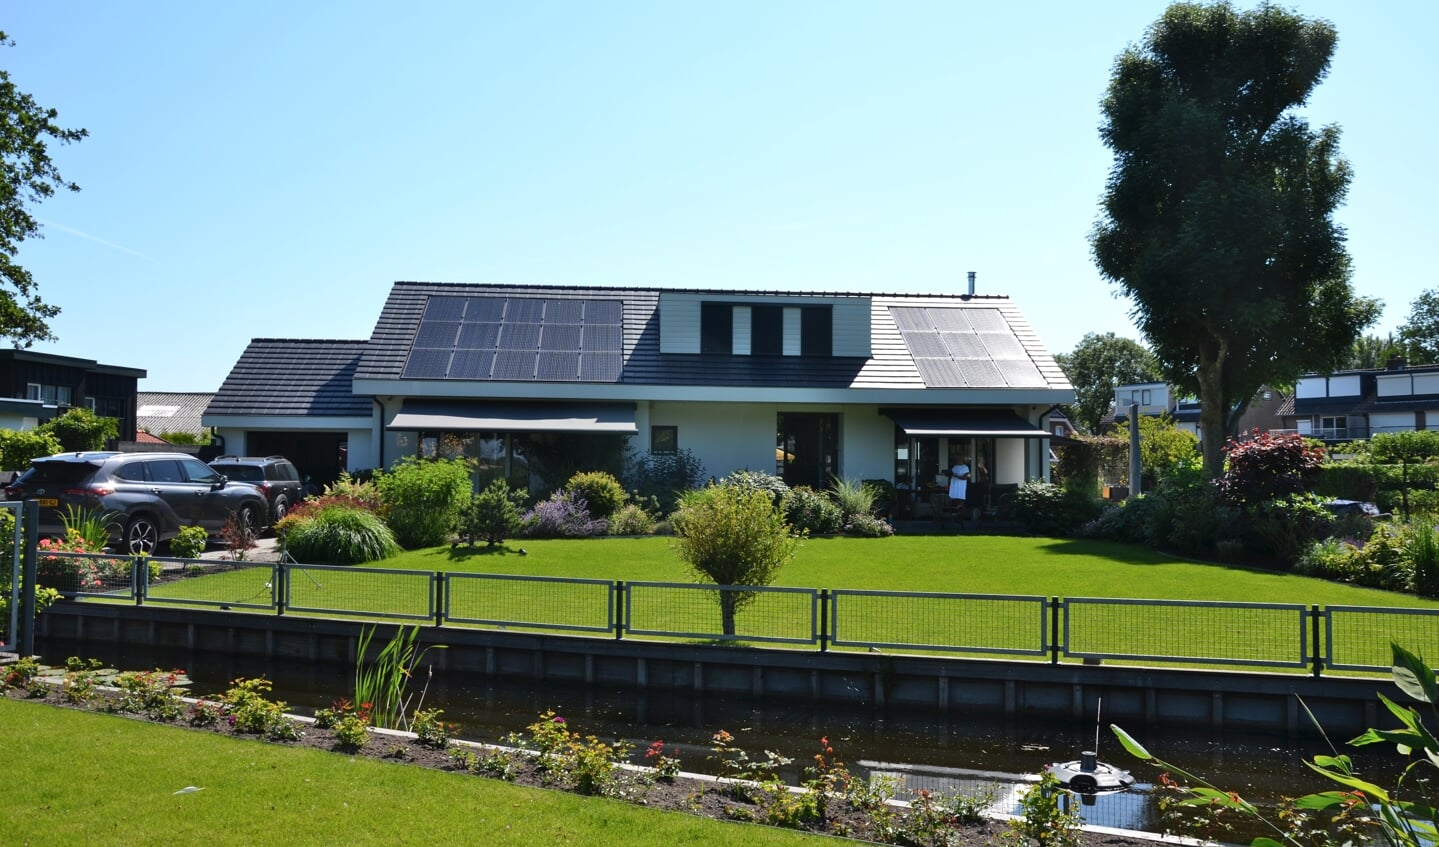 Het huis is helemaal energieneutraal gemaakt met isolatie, vloerverwarming en zonnepanelen op het dak.